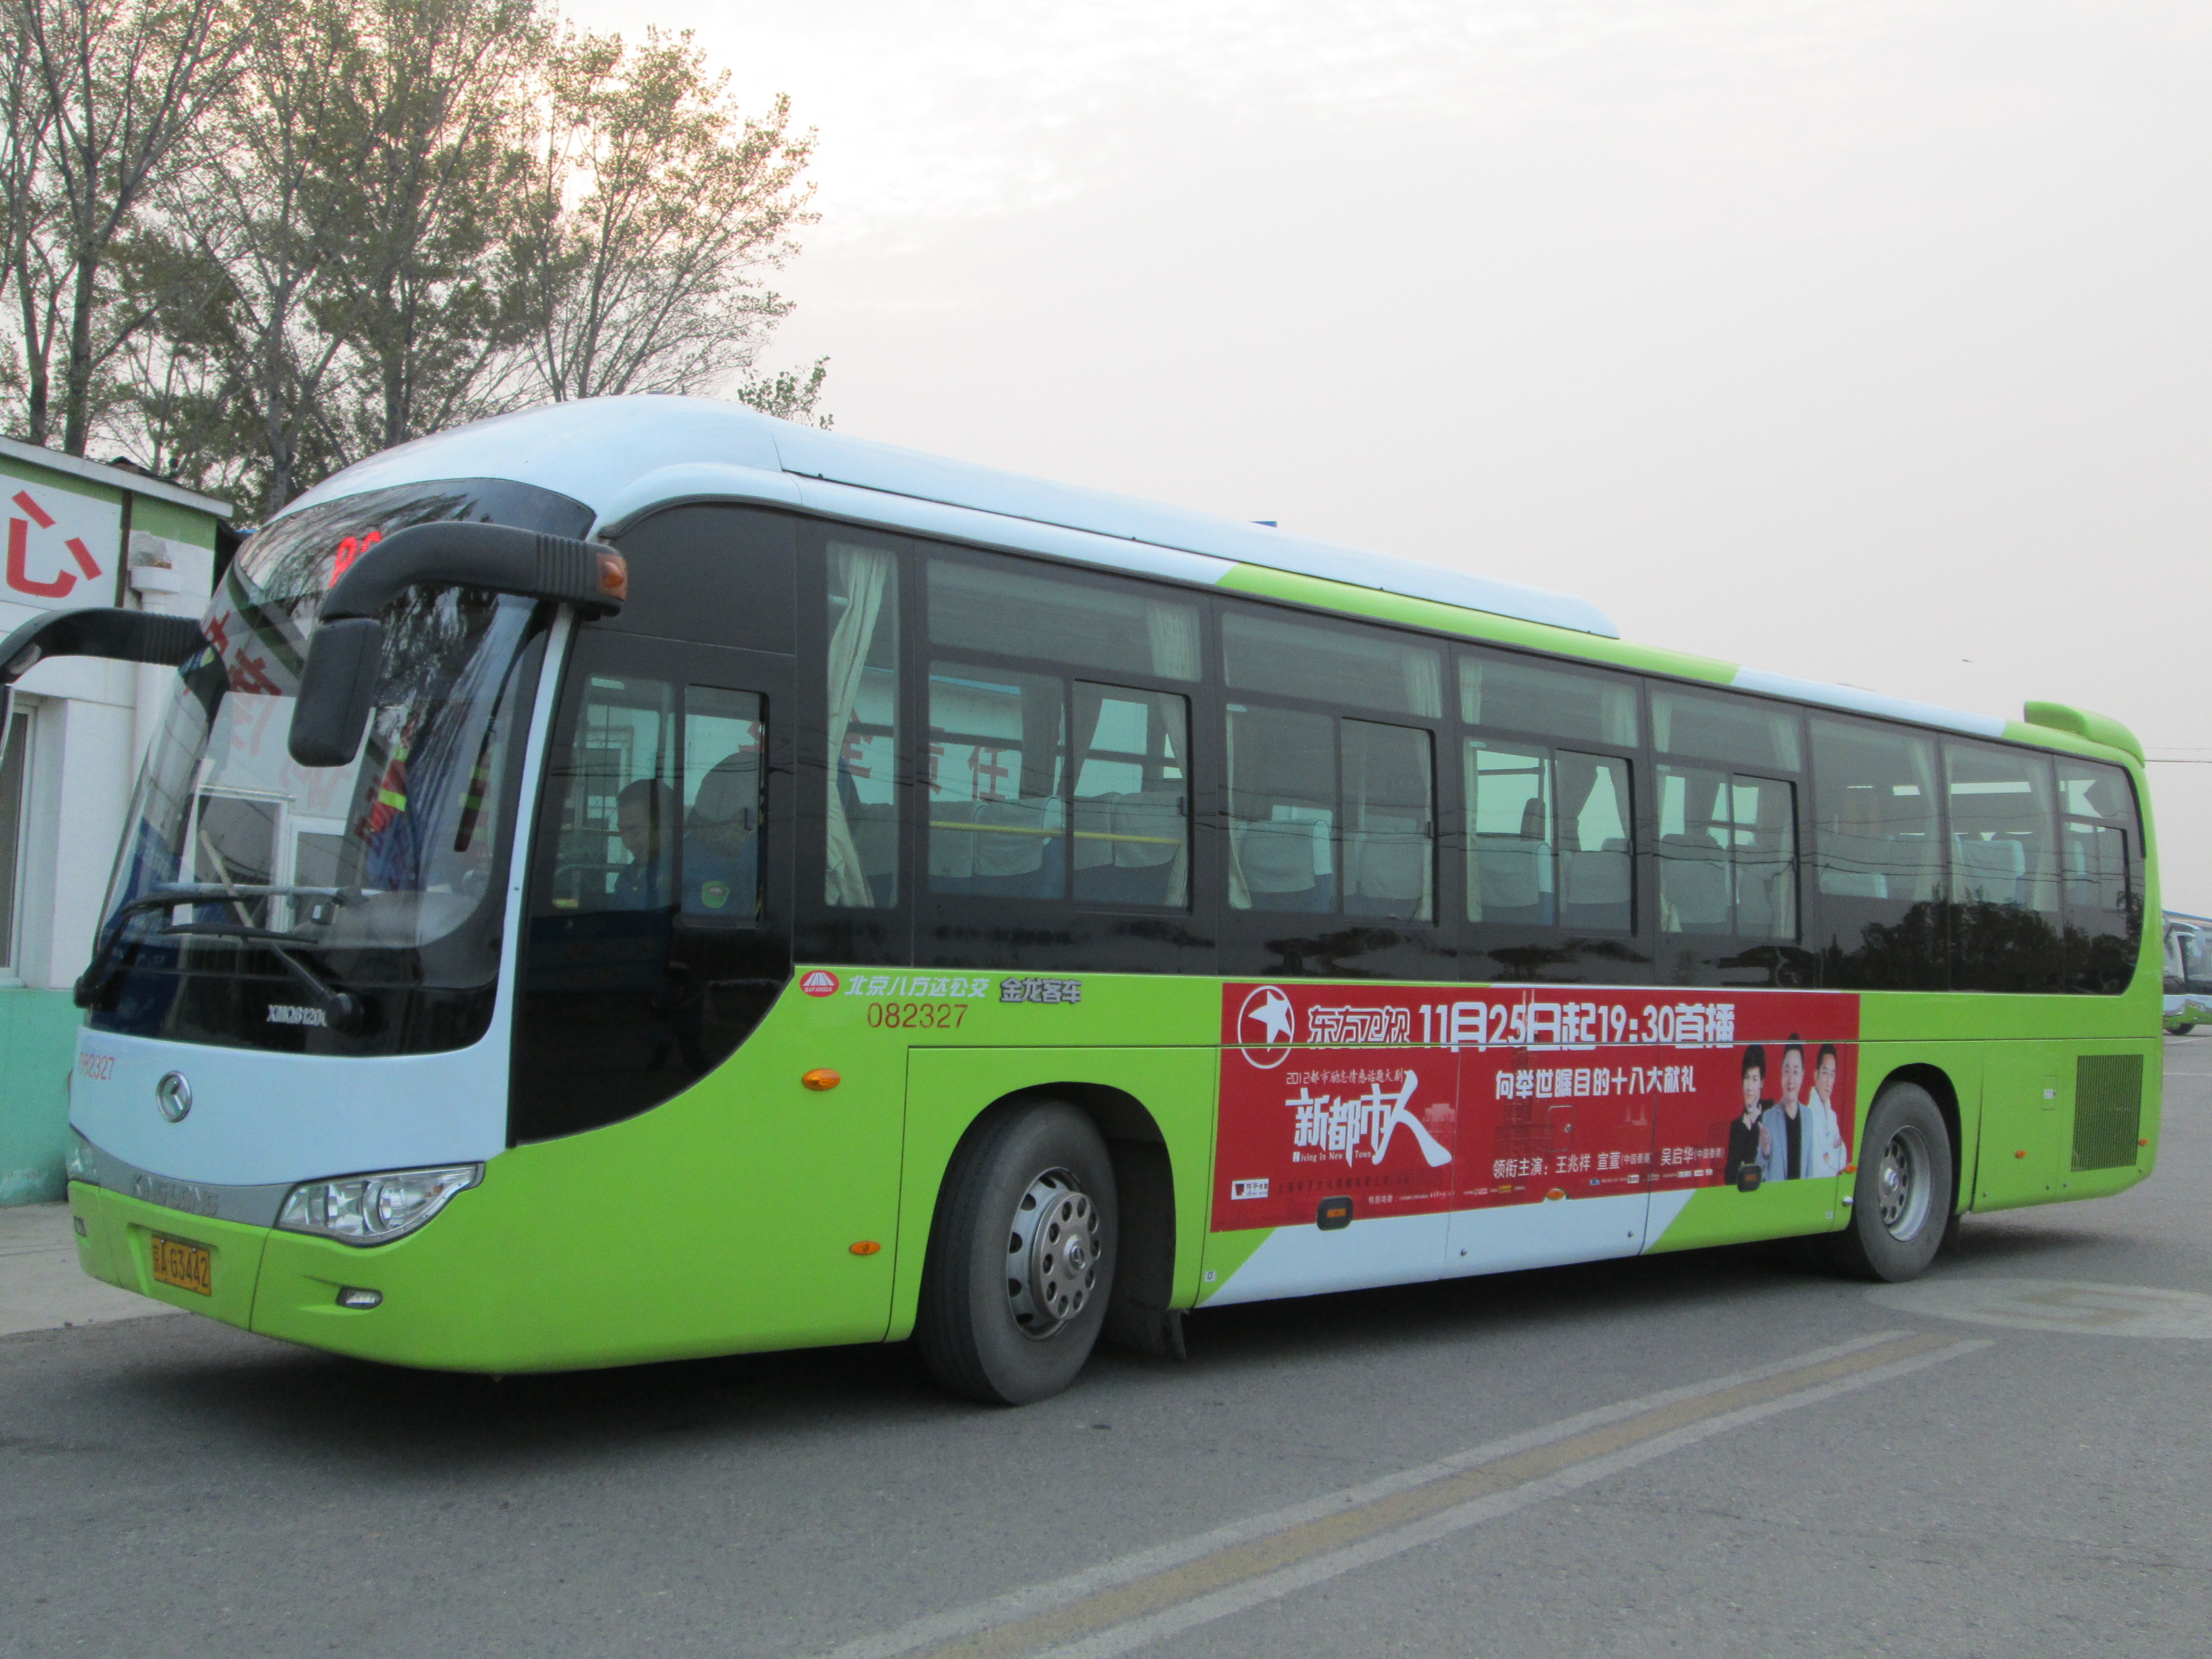 上海公交车身广告